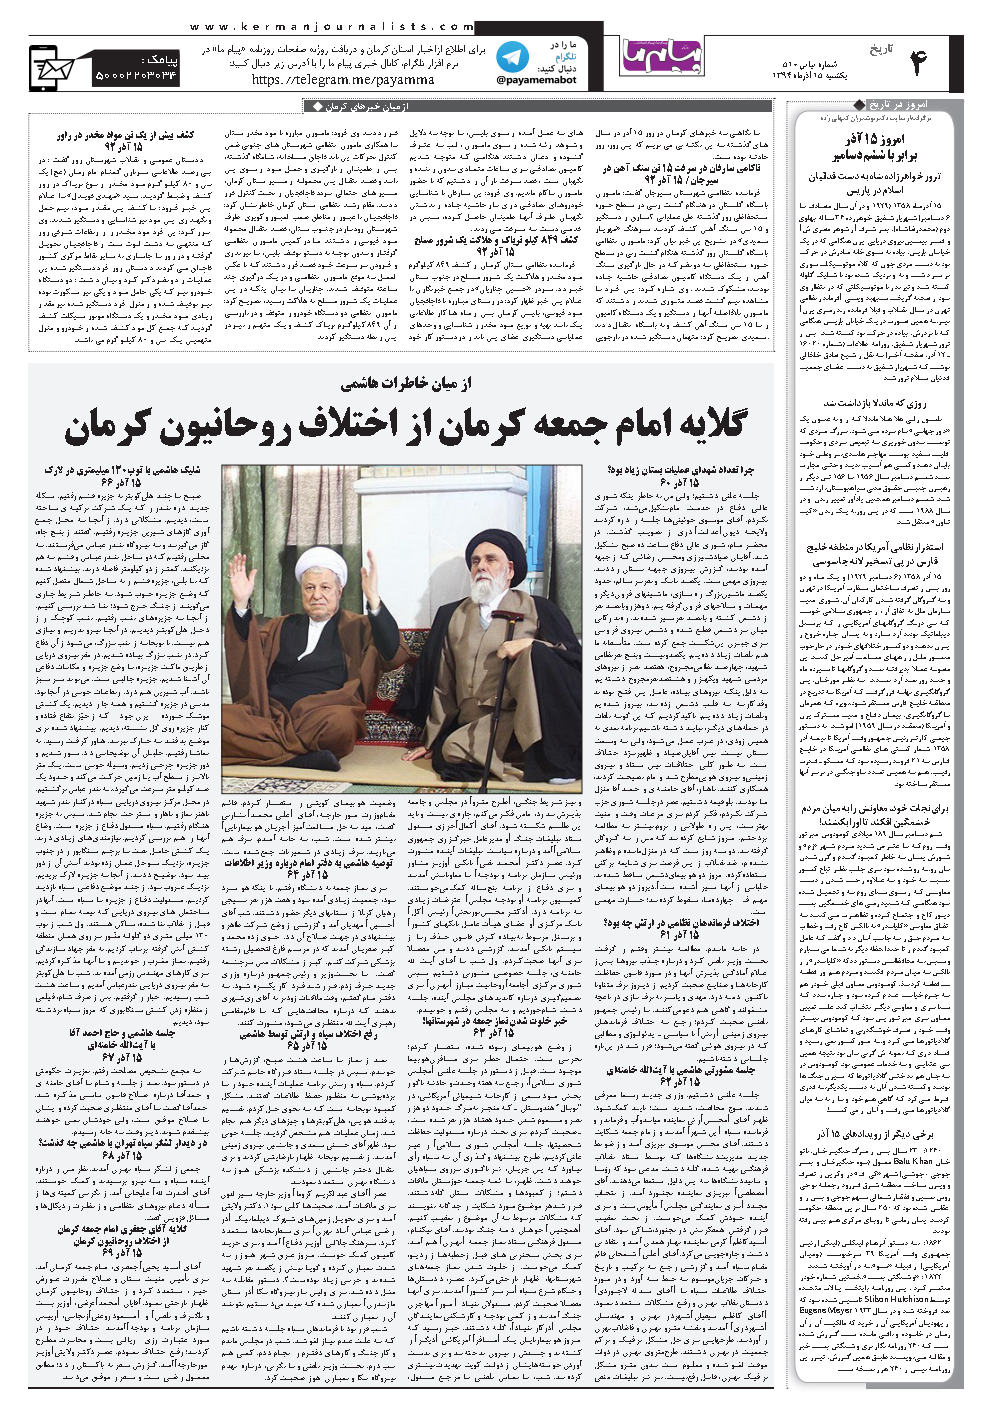 از میان خبرهای کرمان